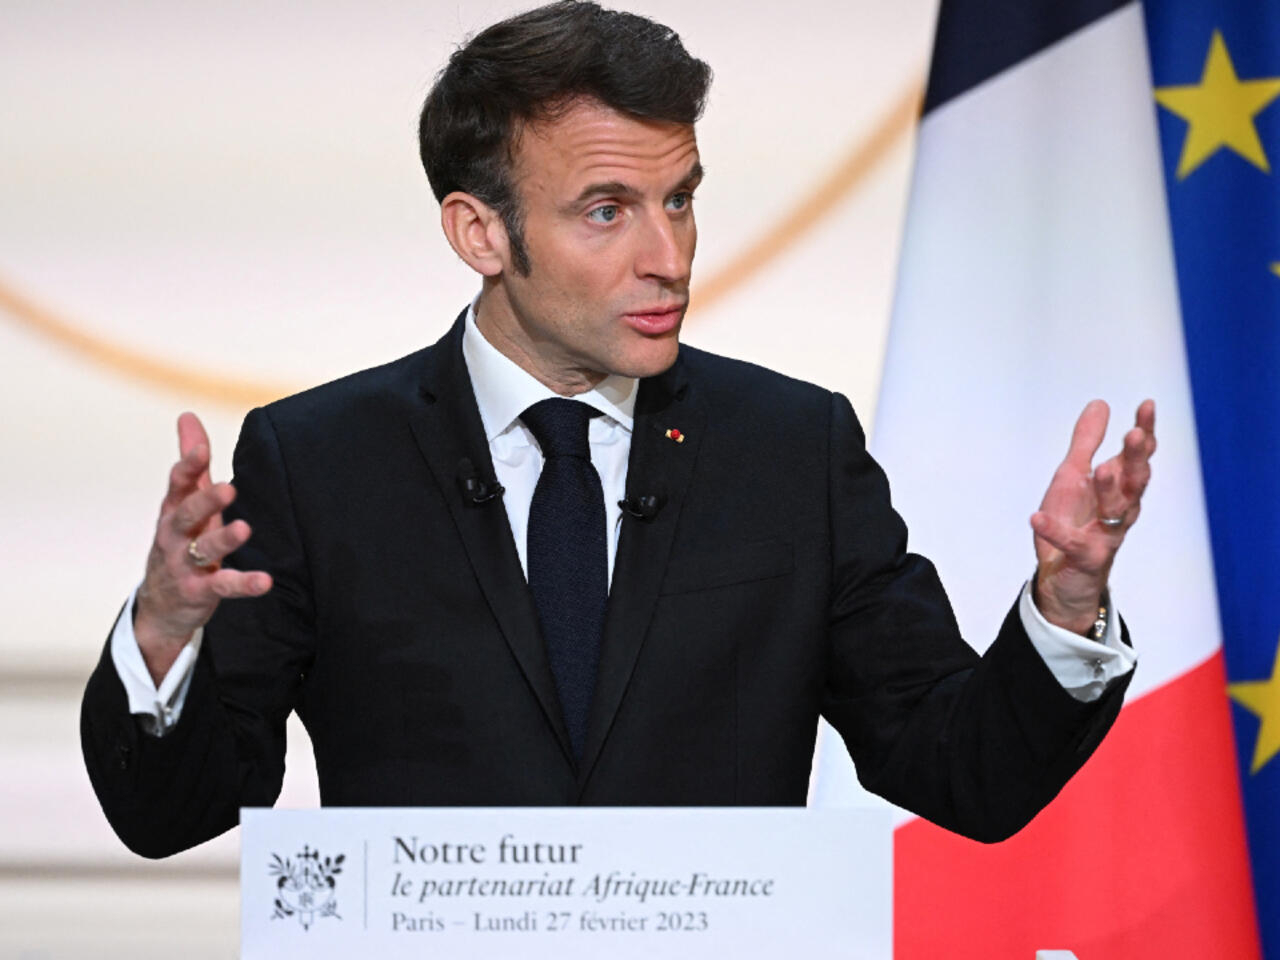 France-Afrique: Macron veut changer d’approche 